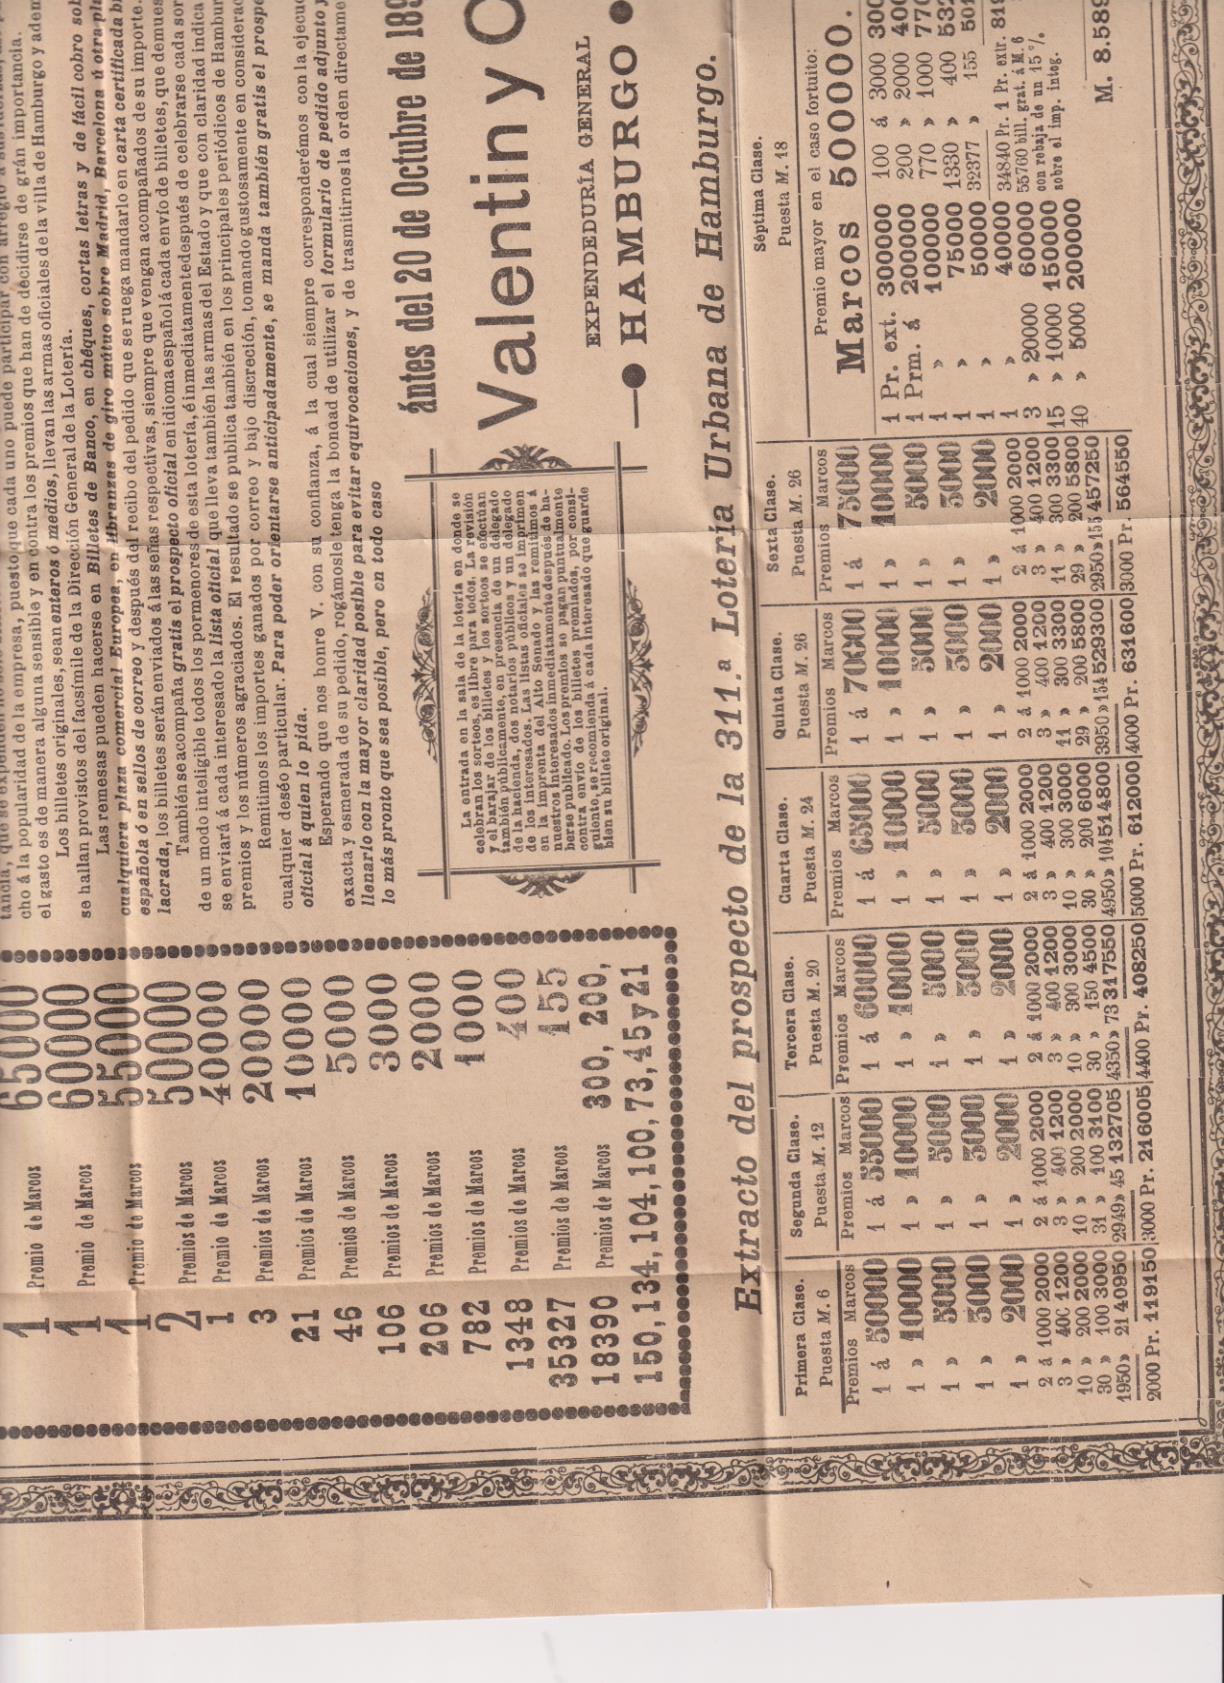 Cartel (44x32,5) Gran Lotería de dinero de Hamburgo. Invitación a participar. Antes del 20 de Octubre de 1896